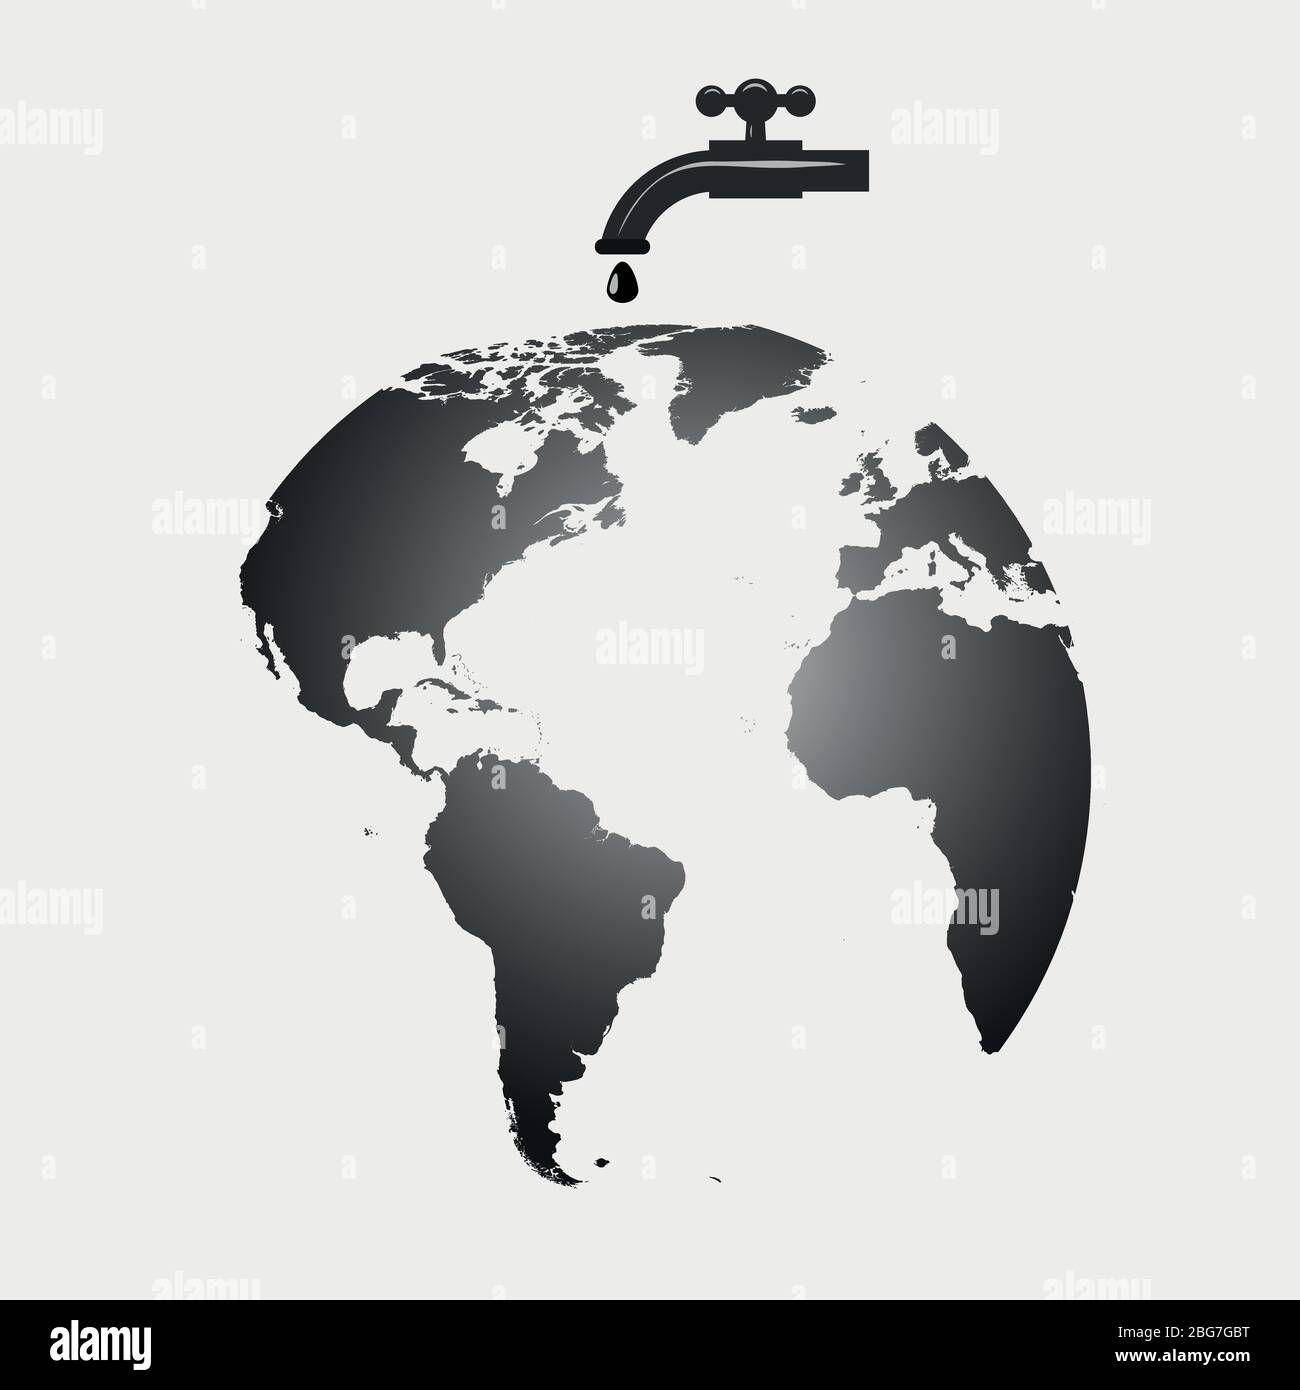 Karte der Weltkarte, Öltropfen Wasserhahn Ventil, weißer Hintergrund Vektor-Design Stock Vektor